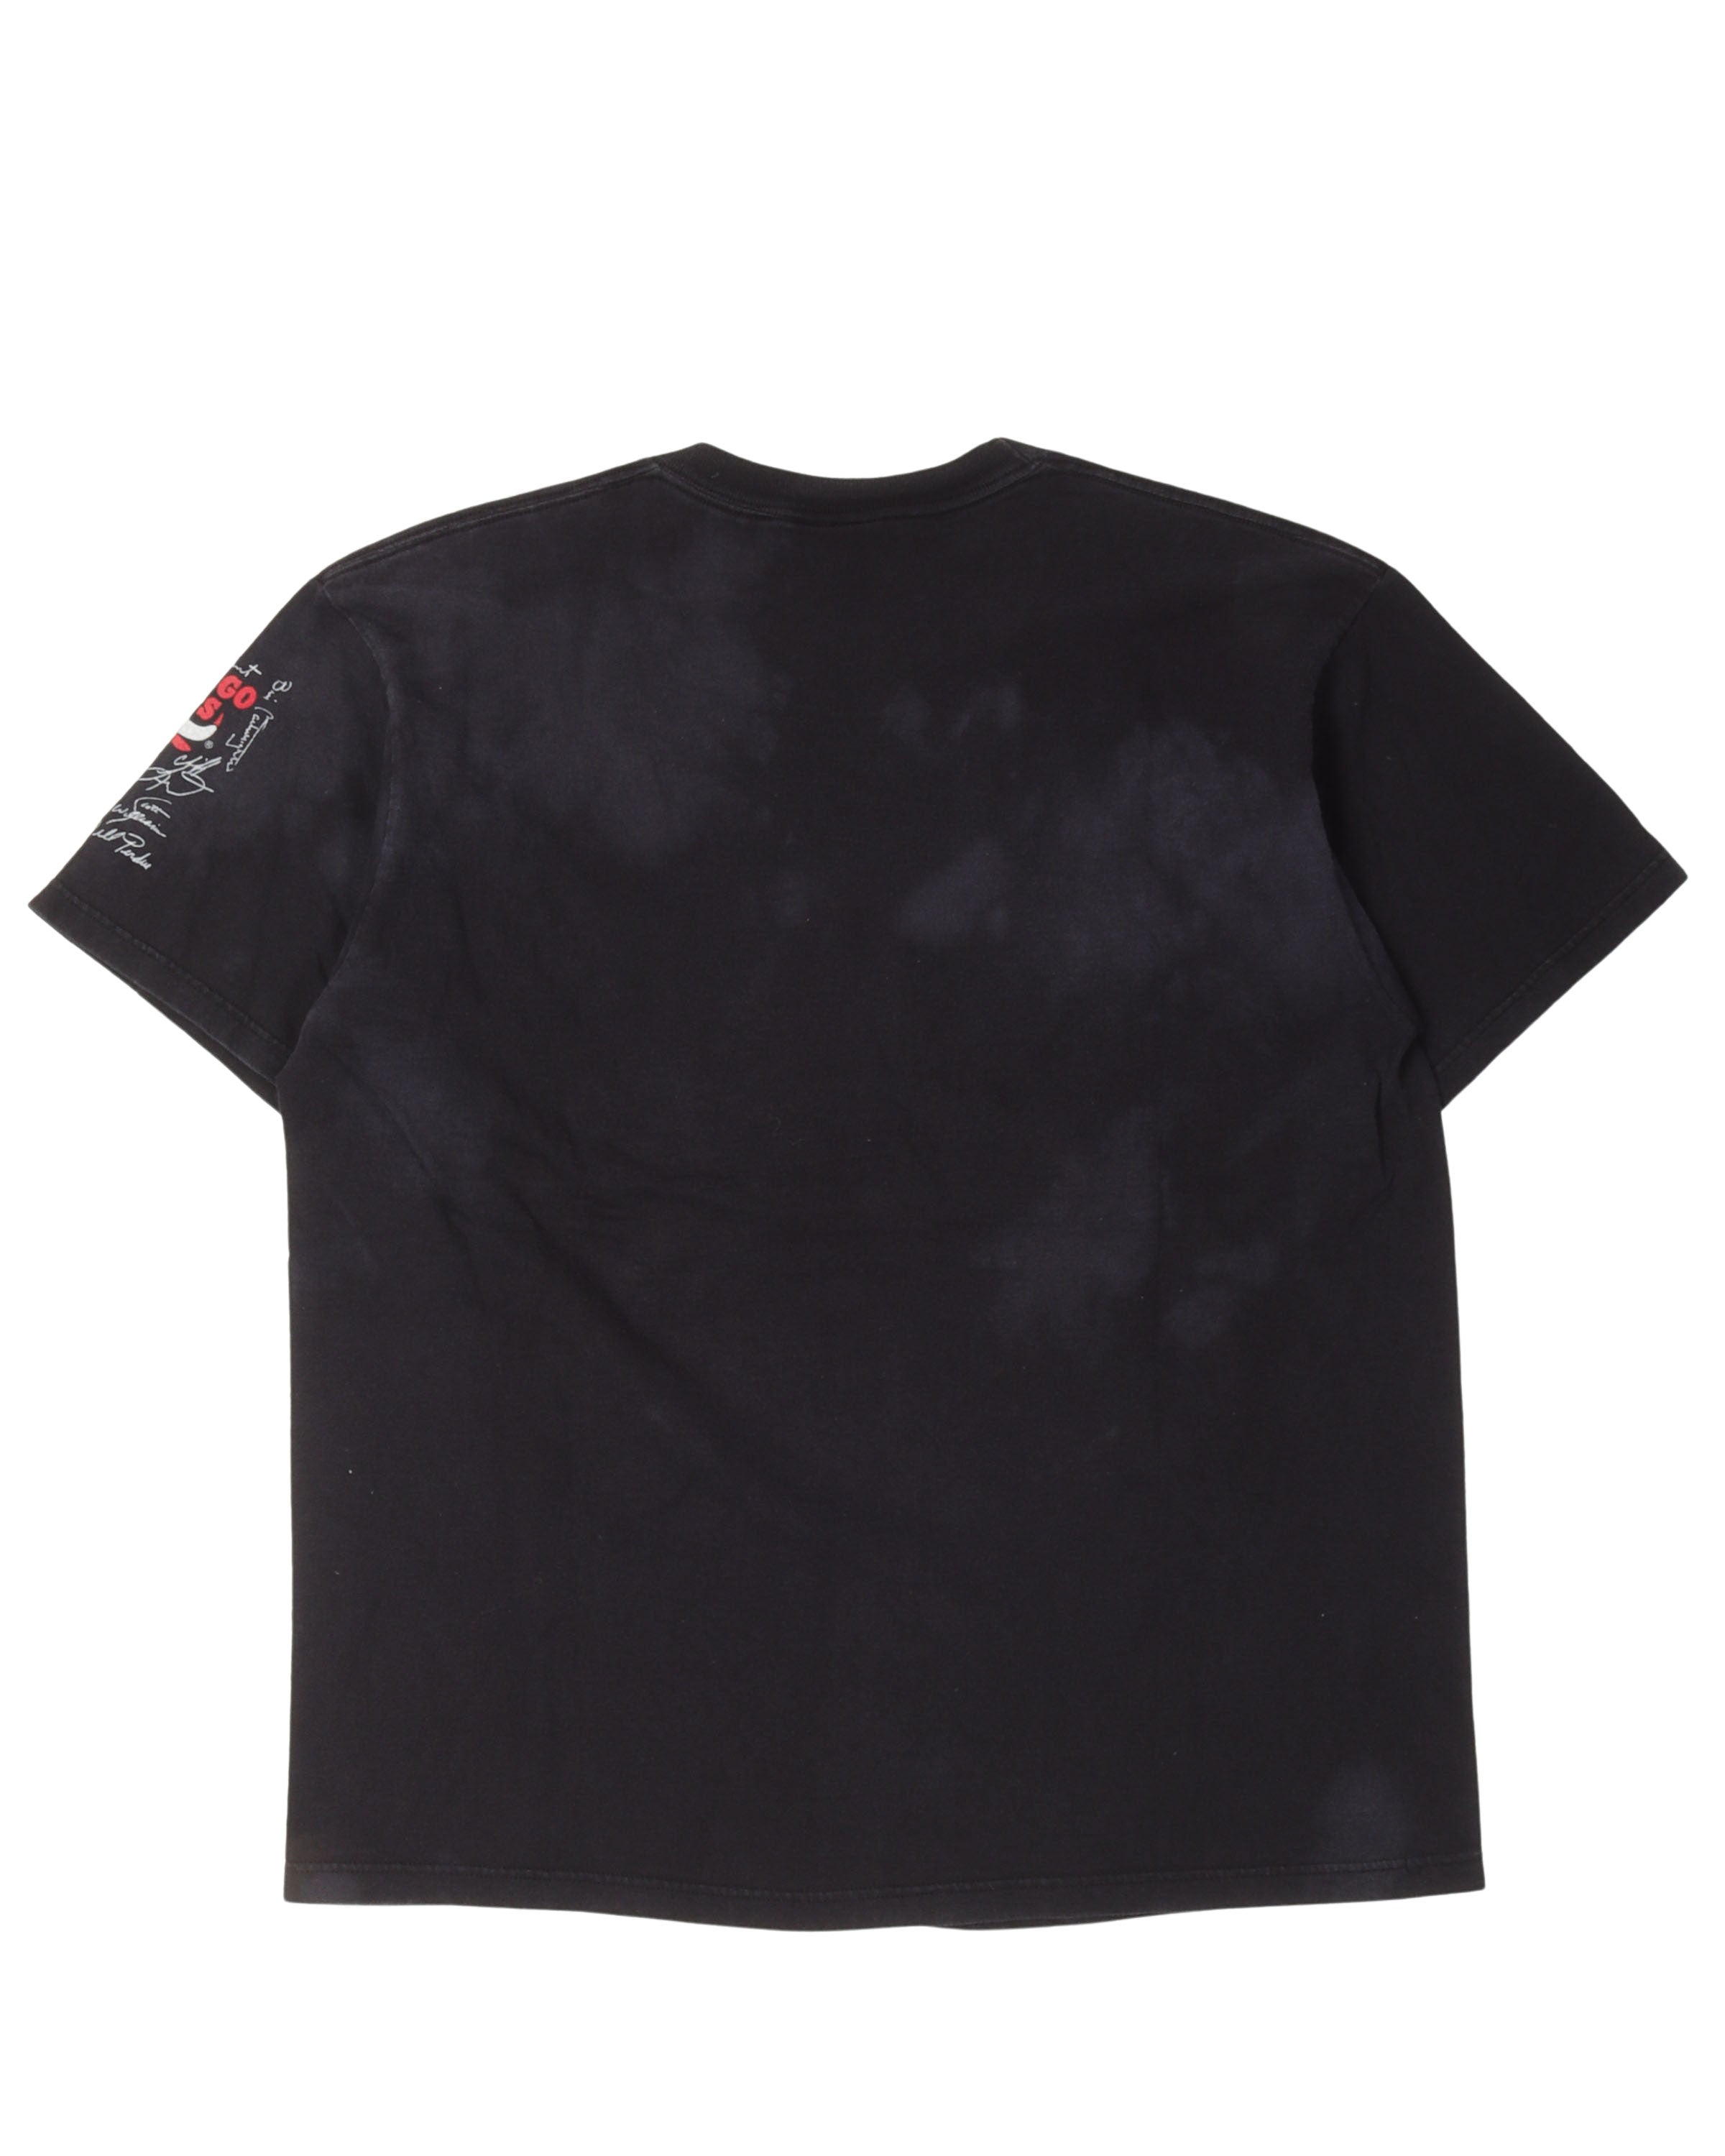 NBA Chicago Bulls Shattered Backboard T-Shirt